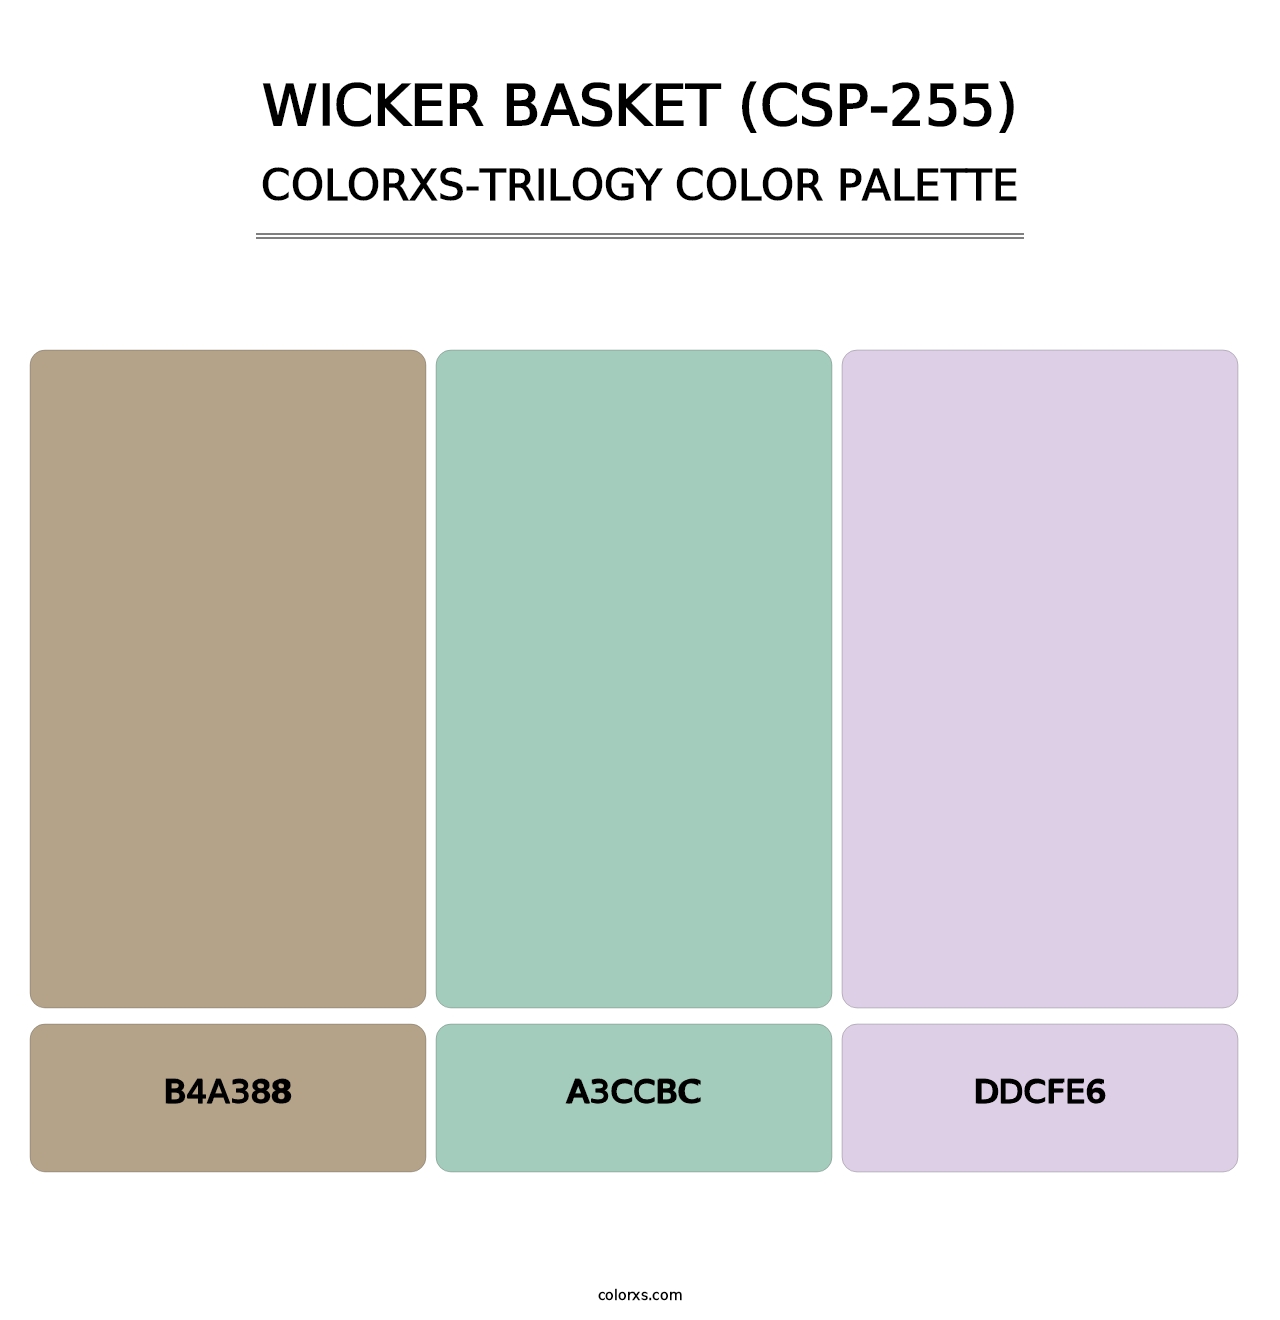 Wicker Basket (CSP-255) - Colorxs Trilogy Palette